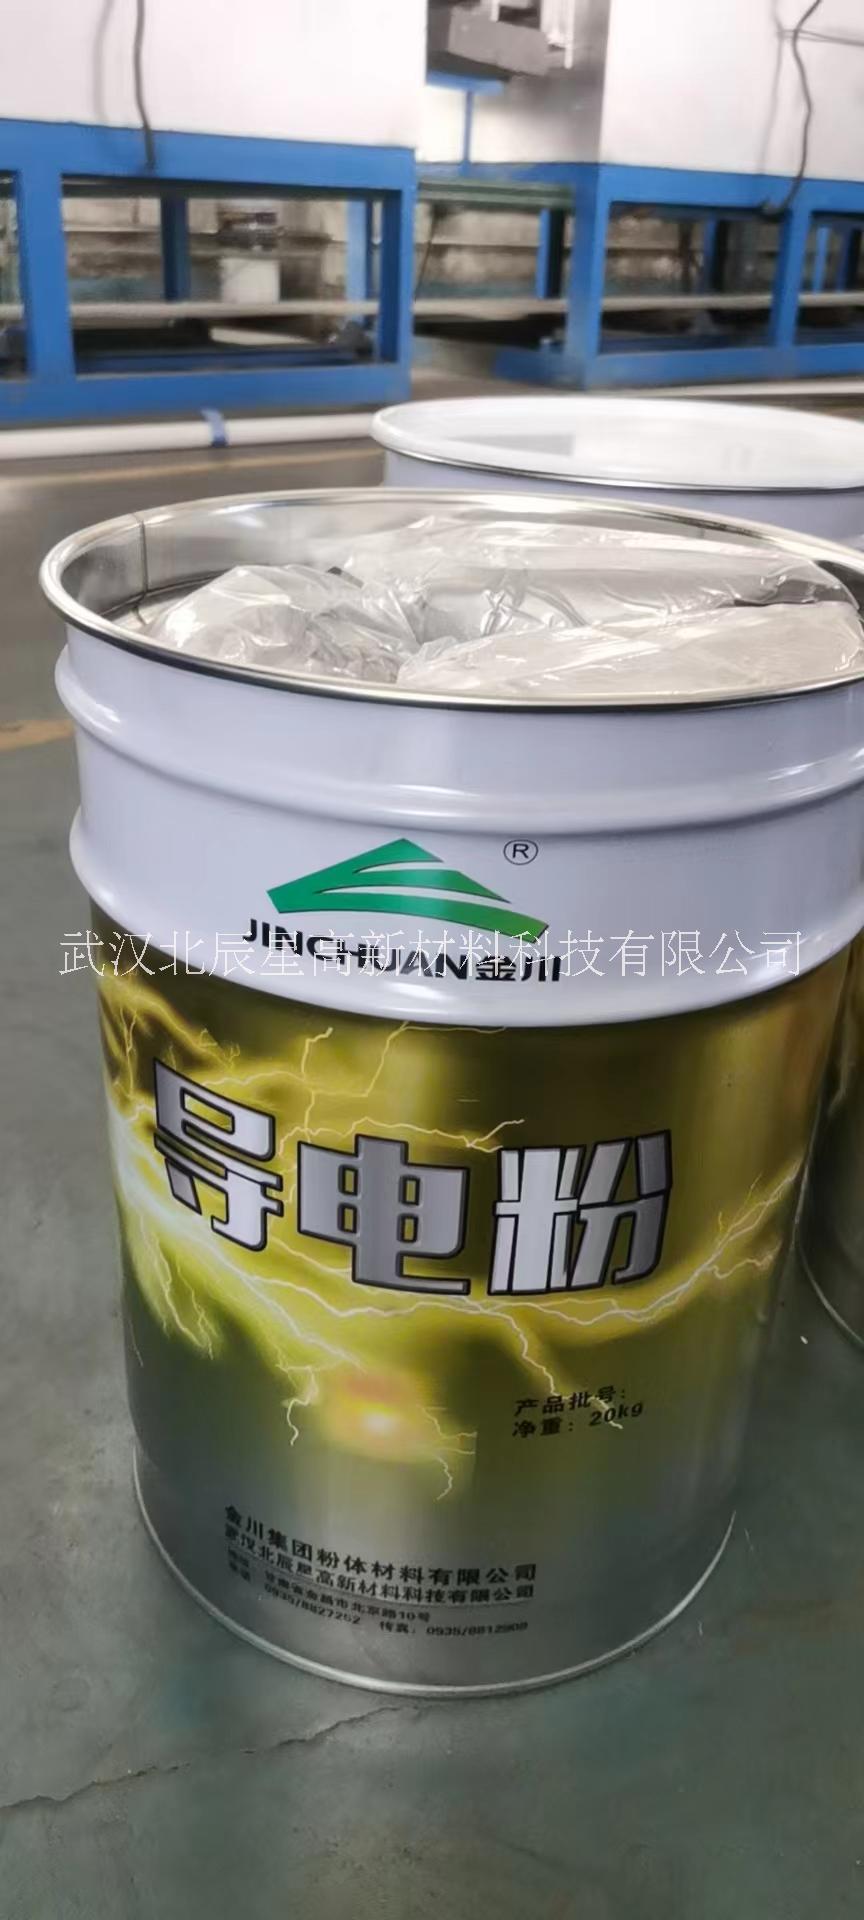 上海导电粉/可广泛应用于导电胶带、导电涂料、导电橡胶、导电硅胶填充，发挥导电的作用 上海导电粉